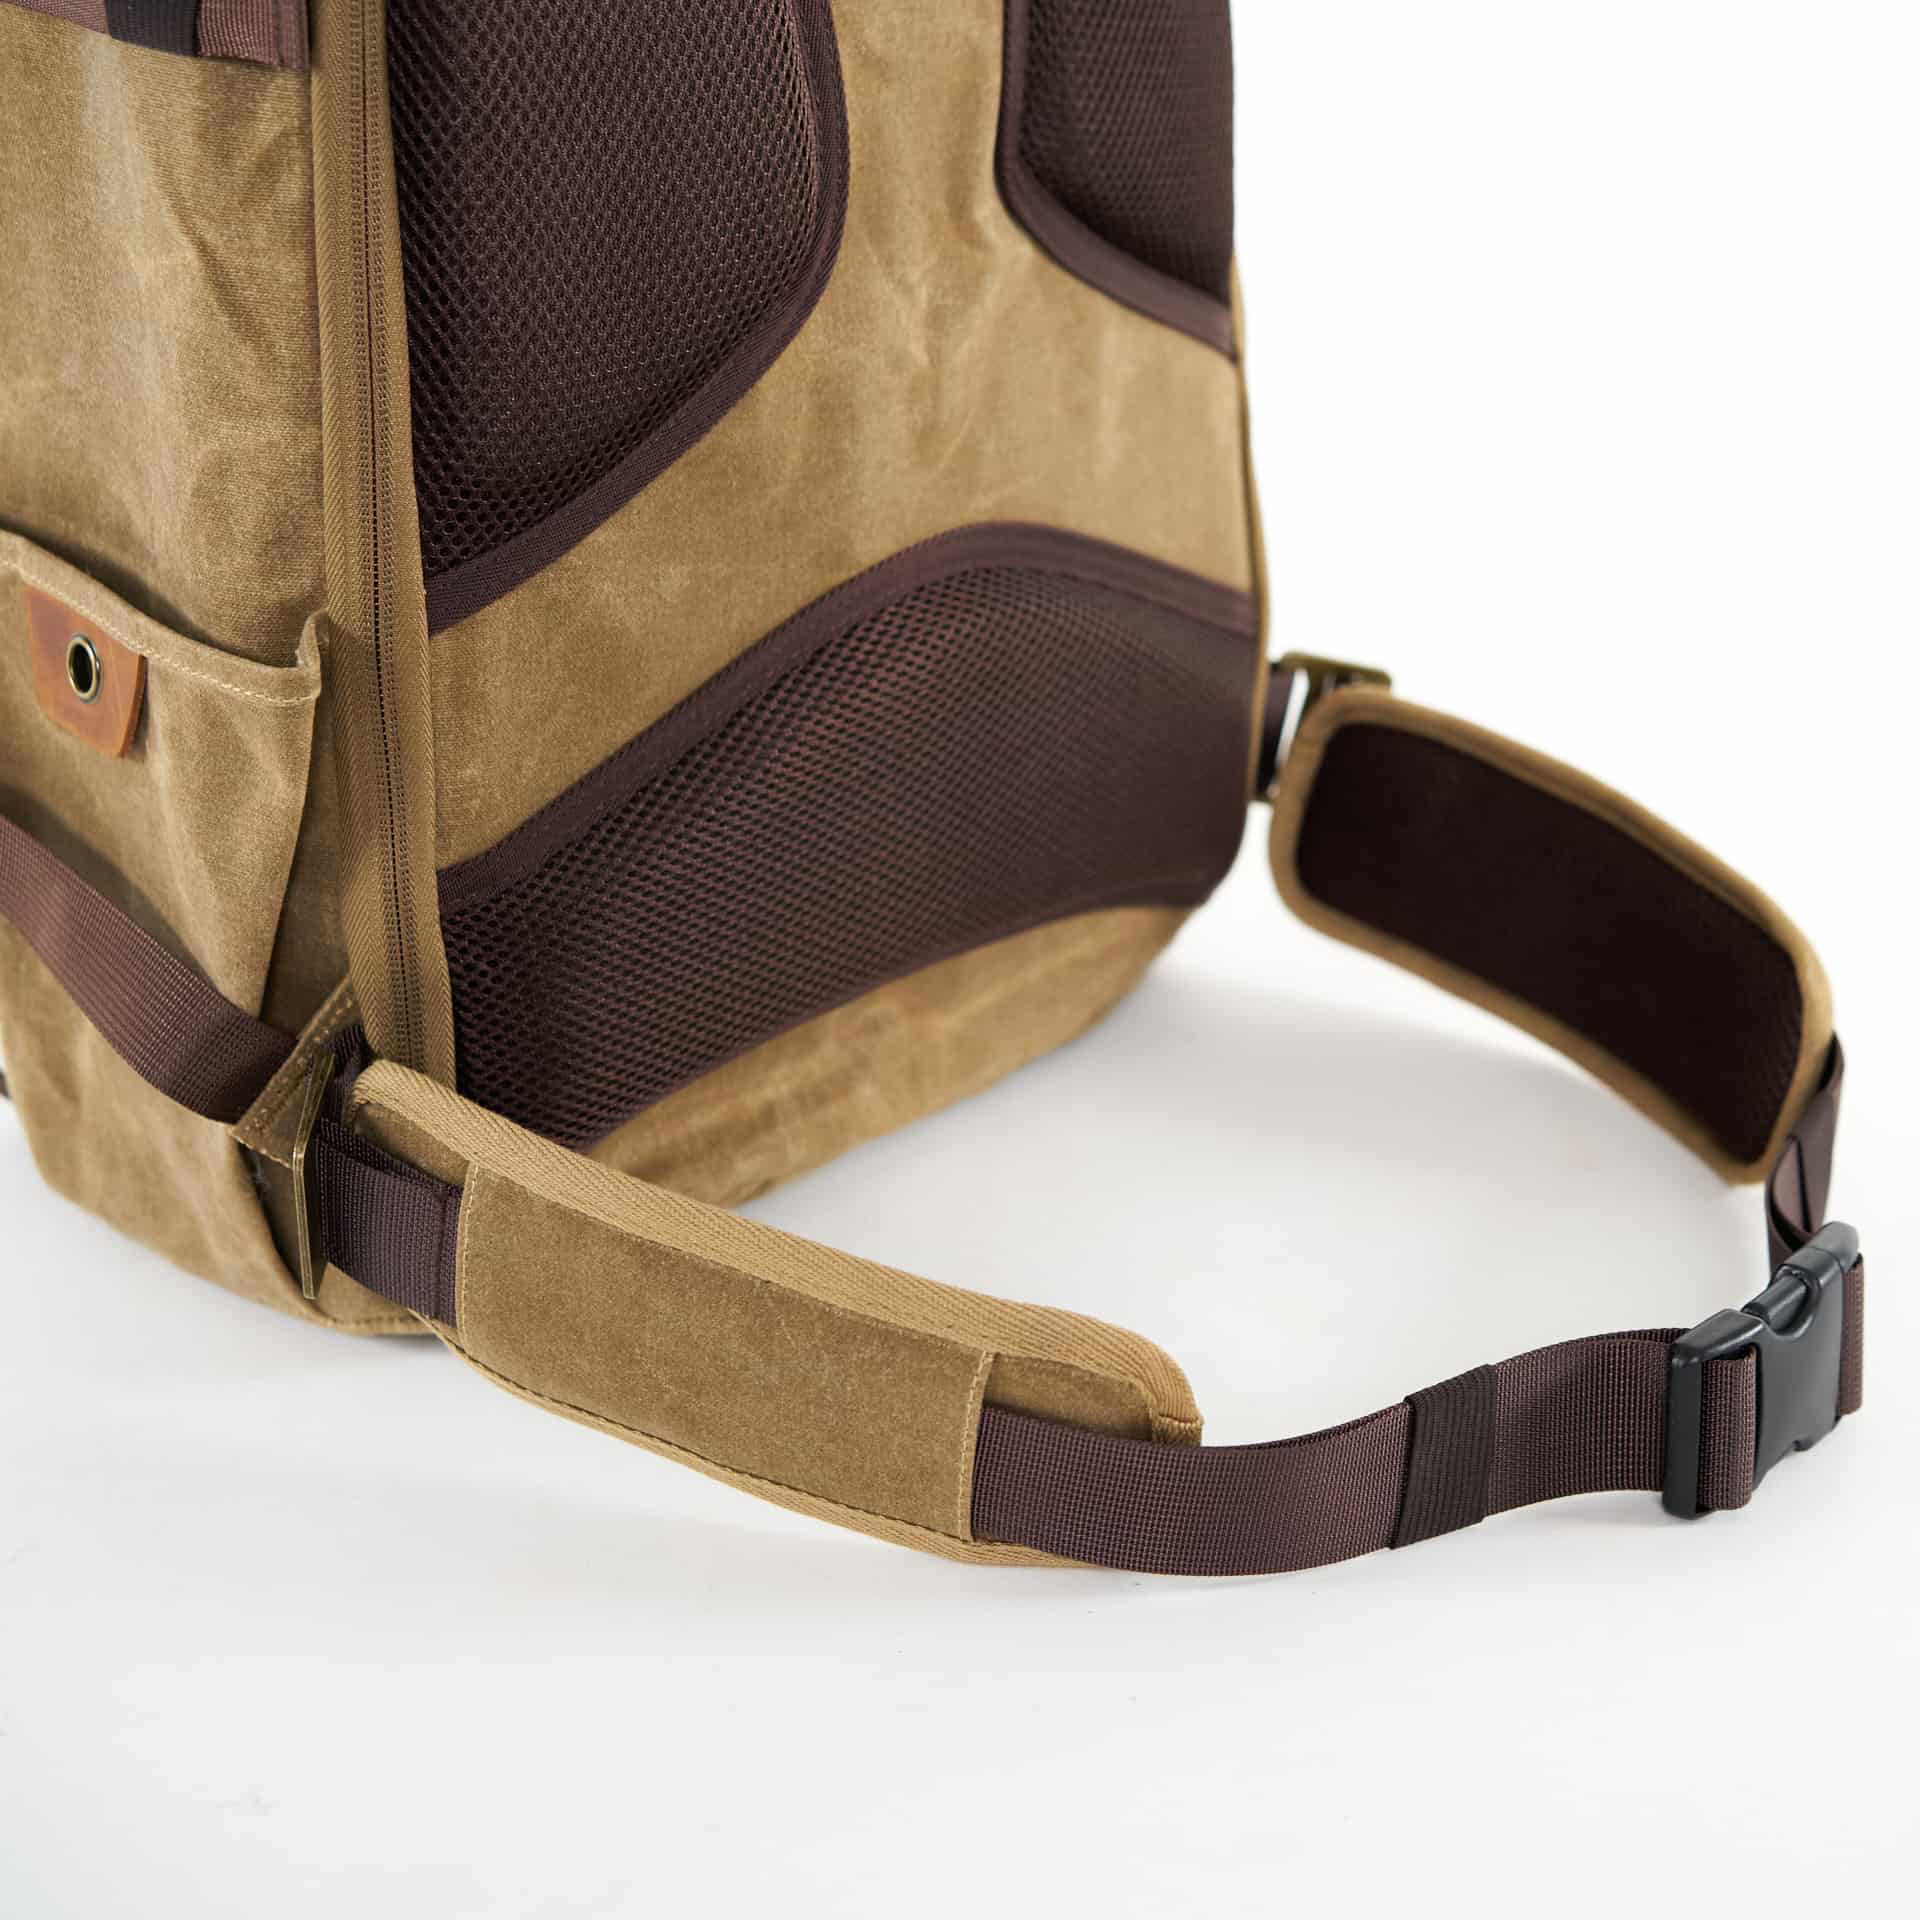 XVI SUNNY 16 Detachable Waist Belt Straps for Travel Camera Backpack Black 